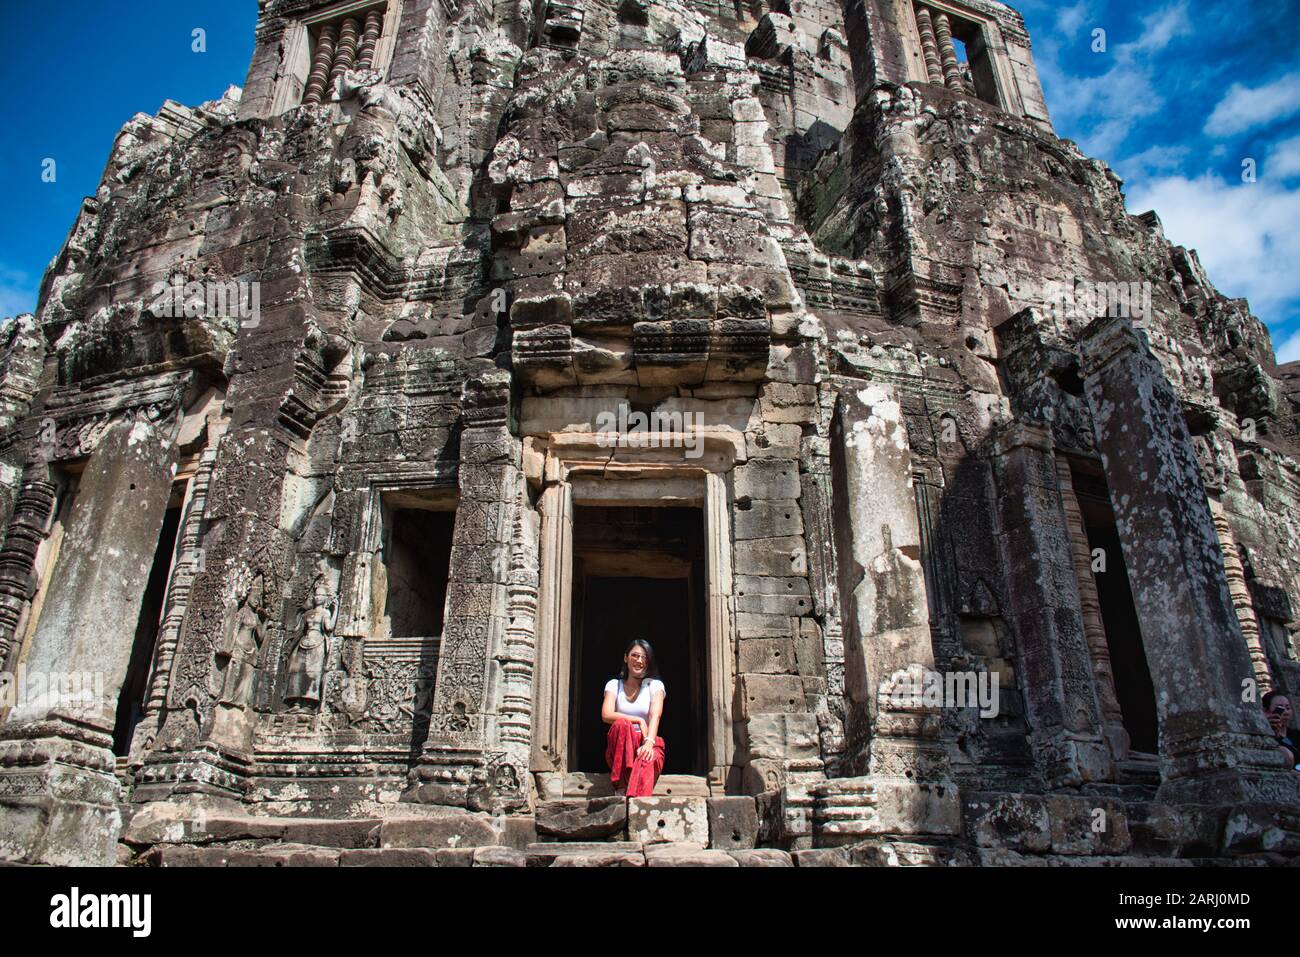 Bella, bella, giovane ragazza tailandese sta esplorando le antiche rovine di Angkor Wat (Città / capitale dei Templi) complesso tempio indù a Siem Reap, Cambogia Foto Stock